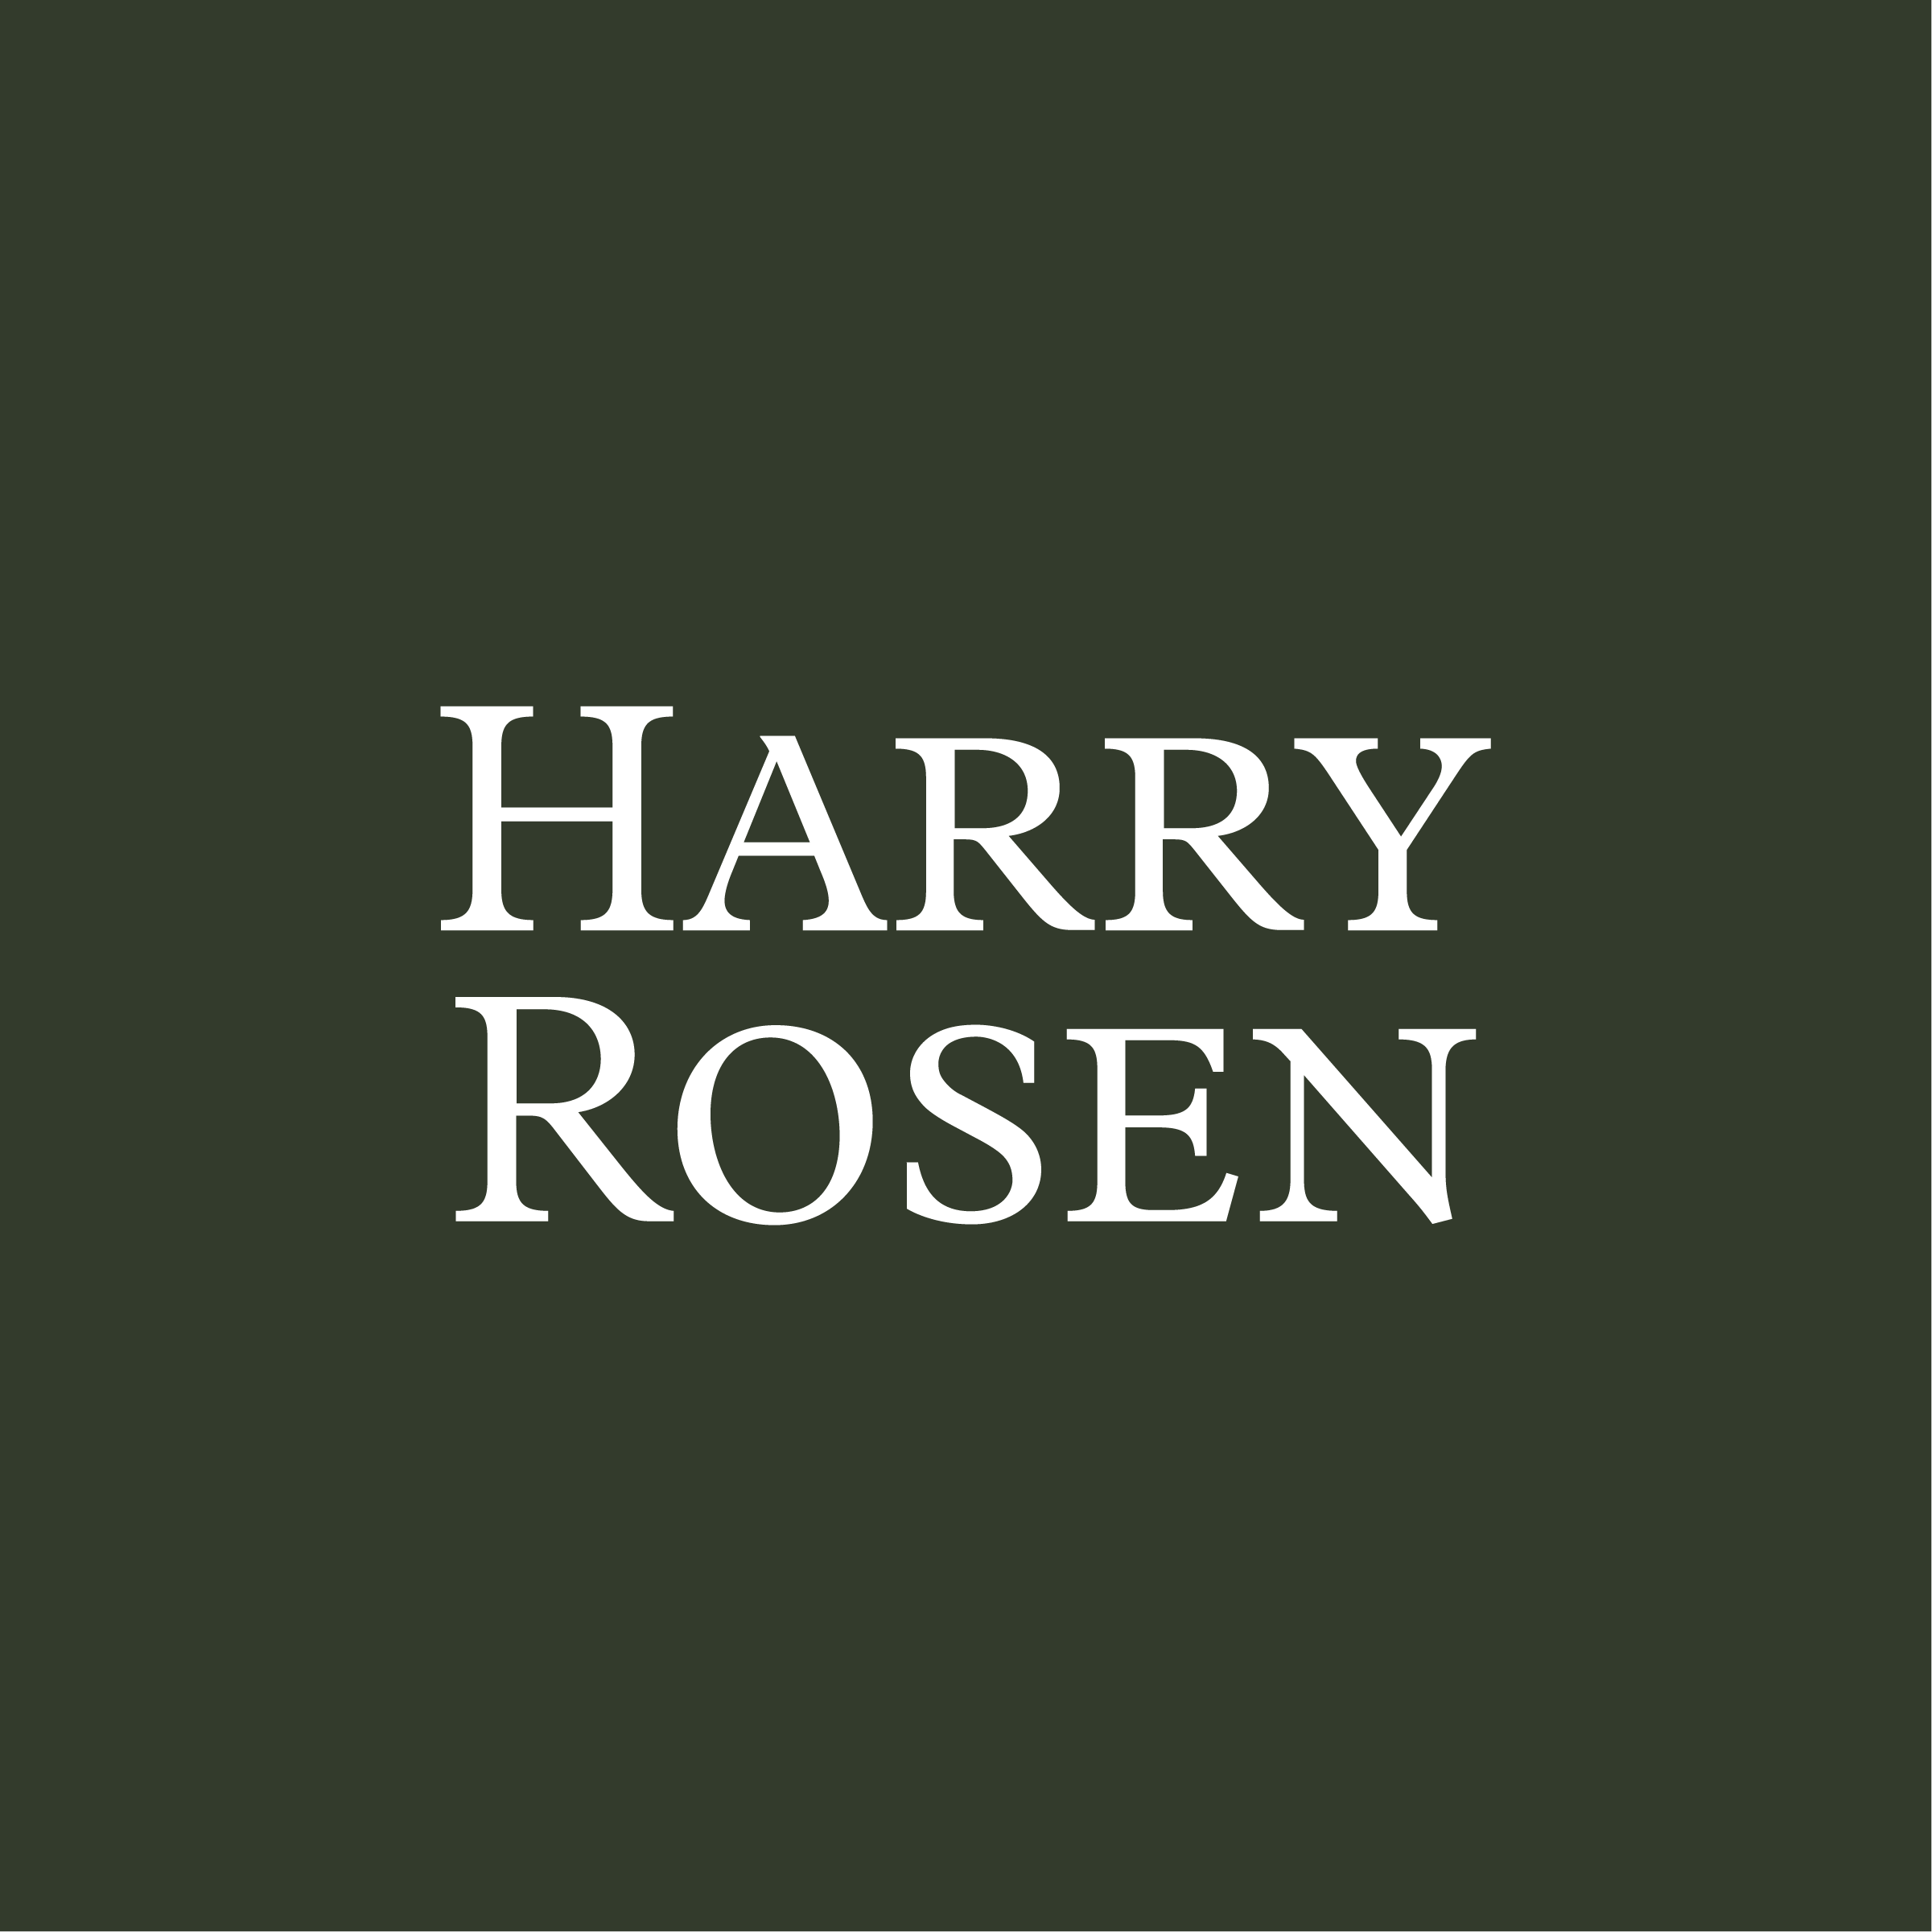 Harry Rosen kampanjkod 